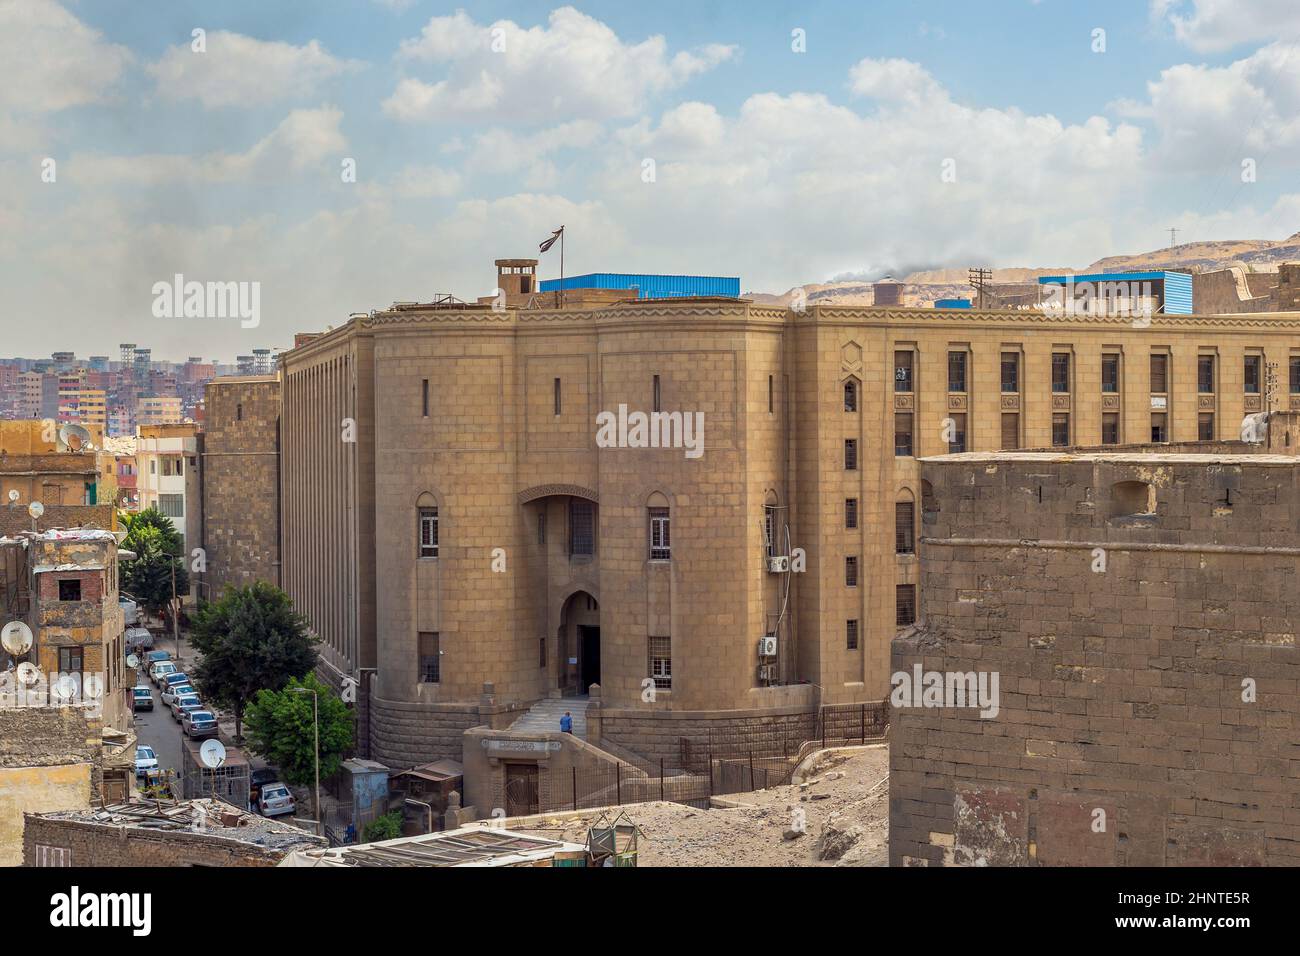 Les Archives nationales d'Égypte, alias la Maison égyptienne de la documentation, situées dans la Citadelle du Caire, en Égypte Banque D'Images